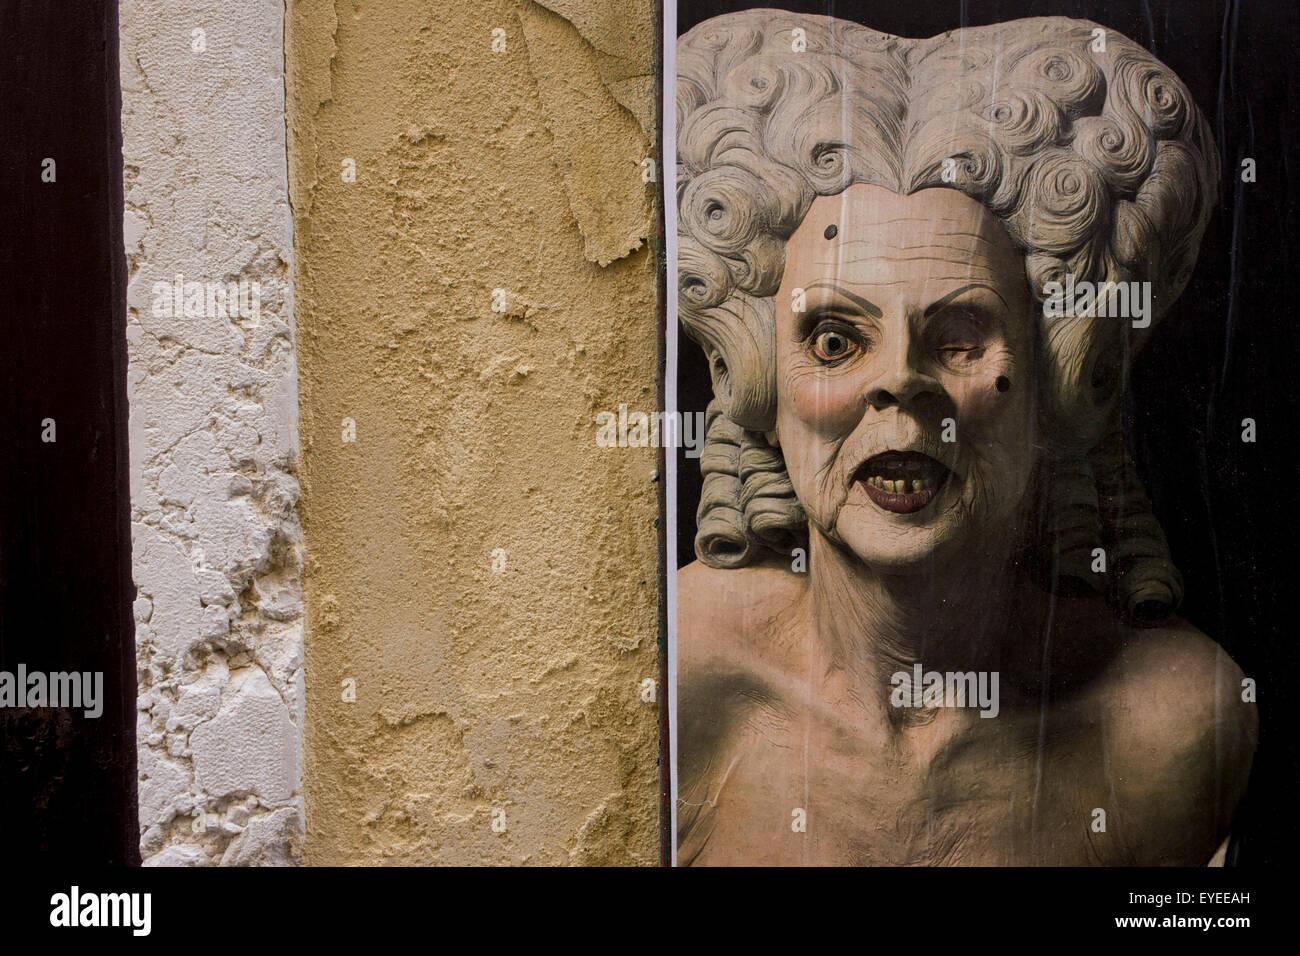 La textura de la pared se hizo eco de yeso en la piel de un personaje teatral en el distrito comercial de San Marcos de Venecia, Italia. Foto de stock